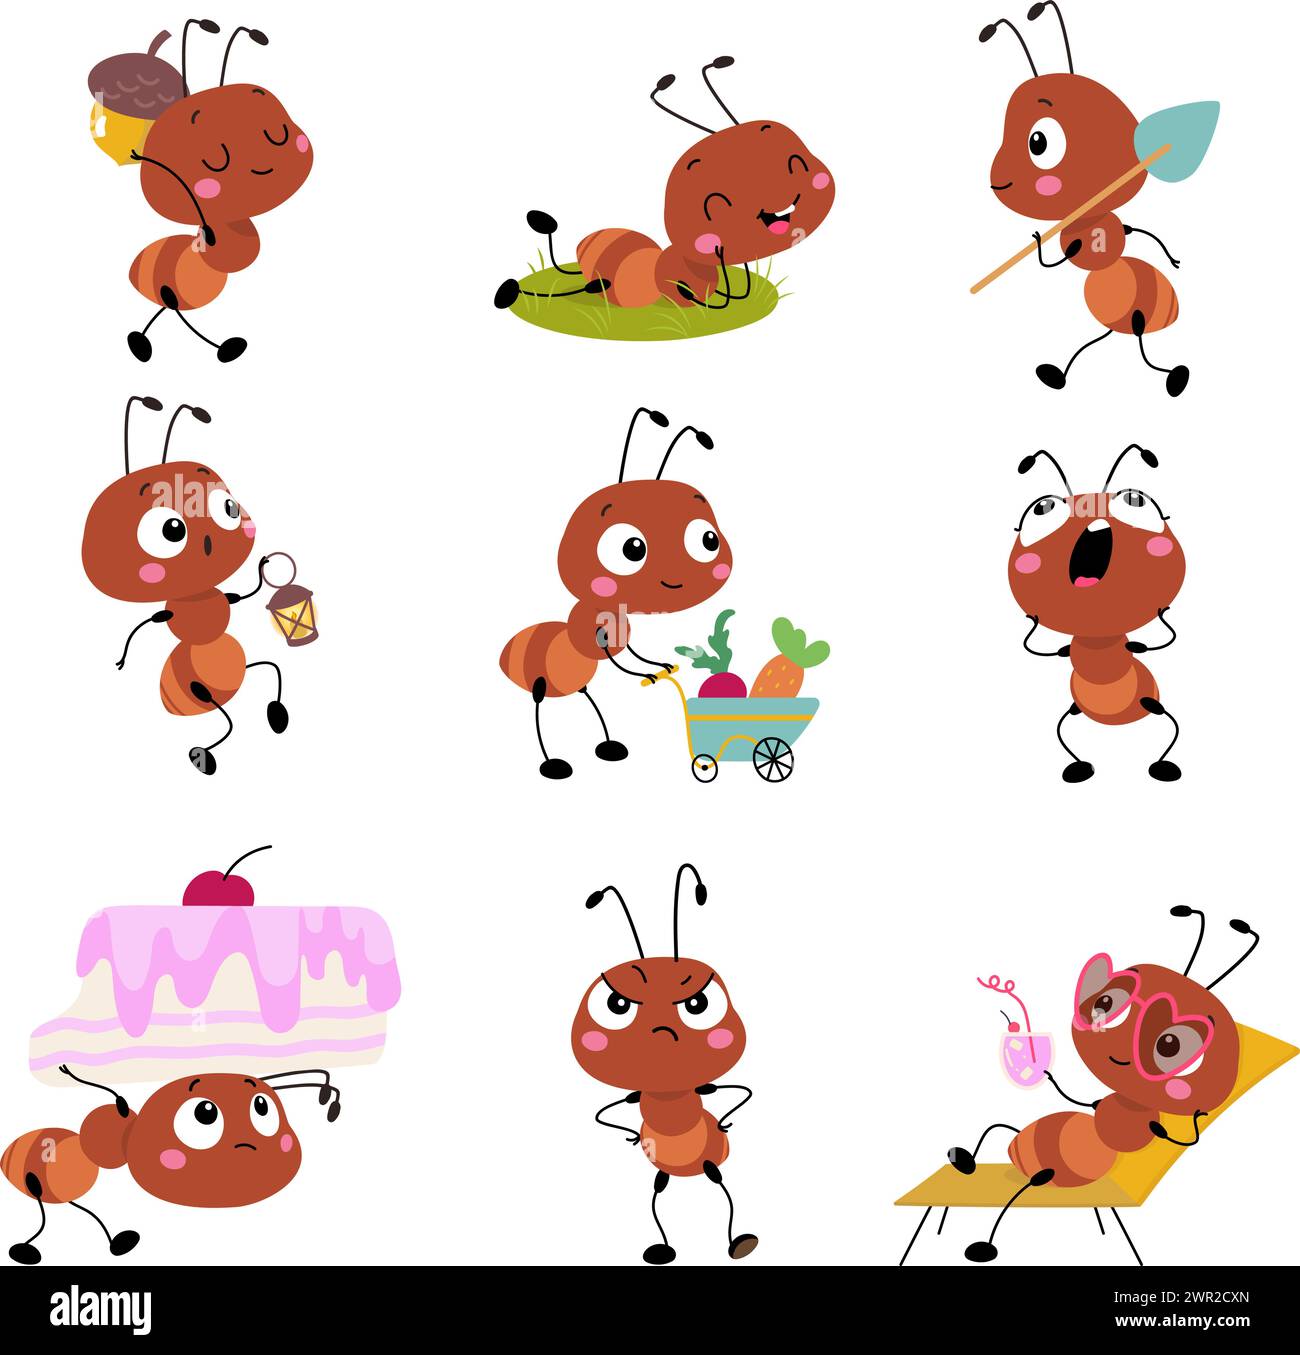 Zeichentrickfiguren. Isolierte Ameisenarbeit, Entspannung und Essen. Niedliches Kindermaskottchen mit verschiedenen Emotionen. Insektenaktivität heute Vektor Stock Vektor